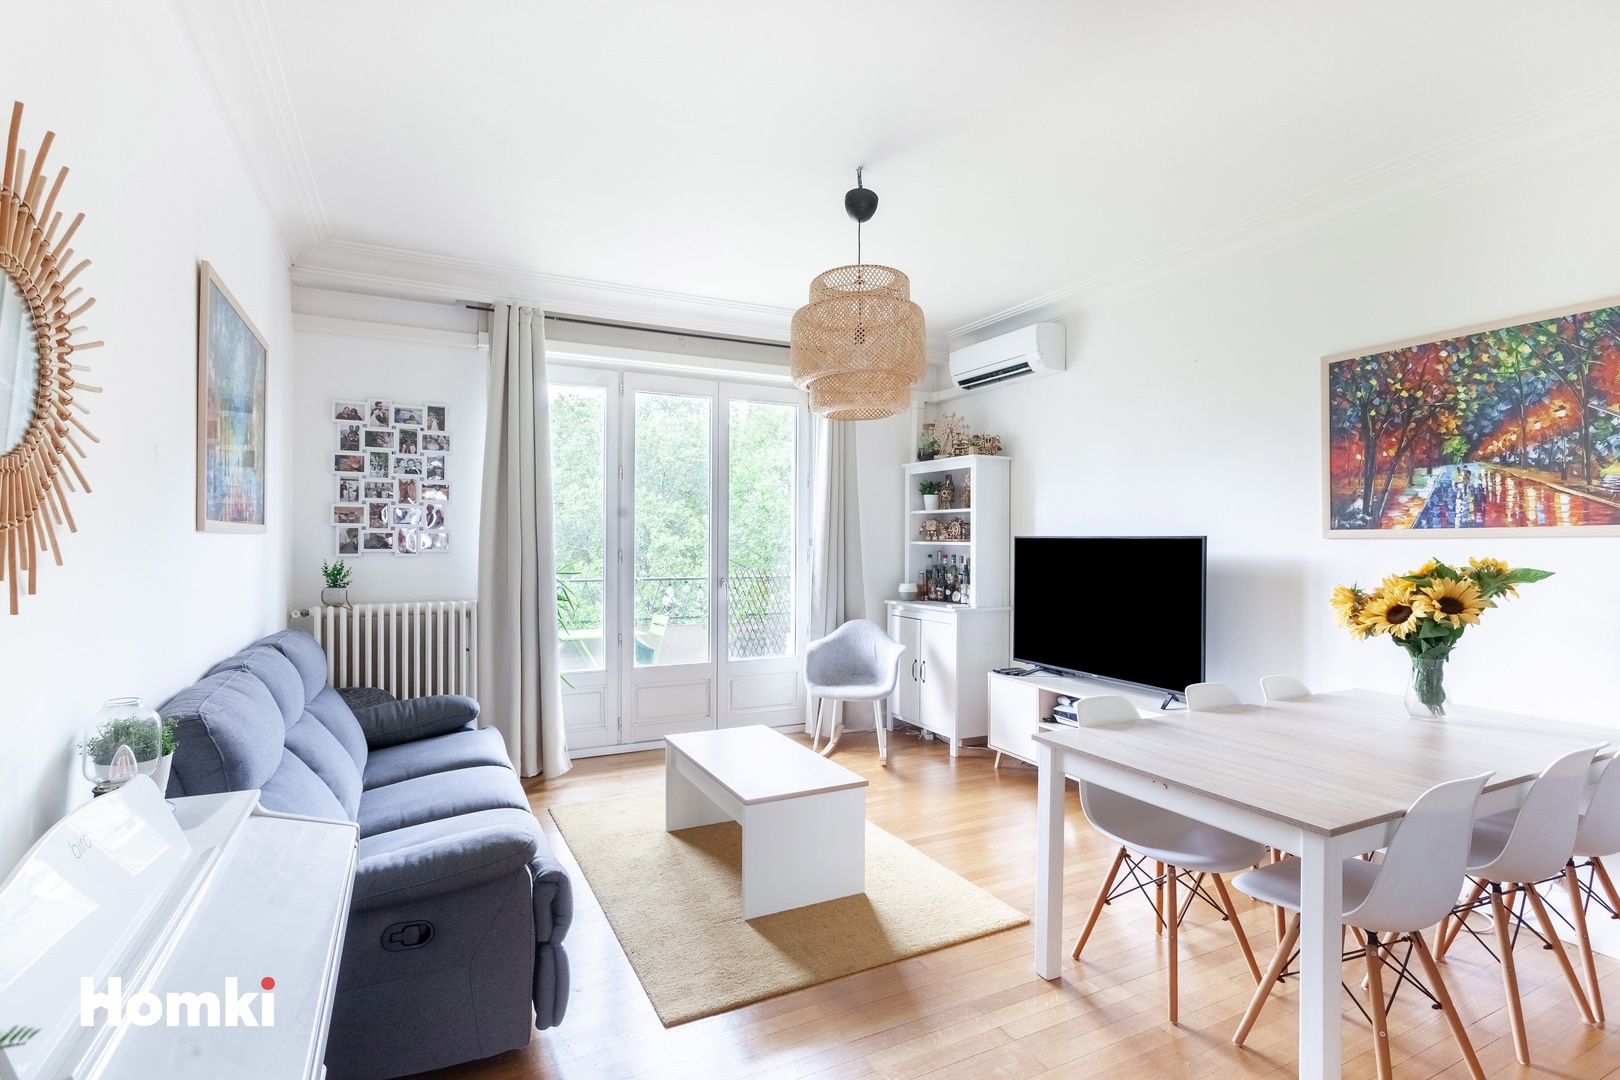 Homki - Vente Appartement  de 74.0 m² à Grenoble 38000